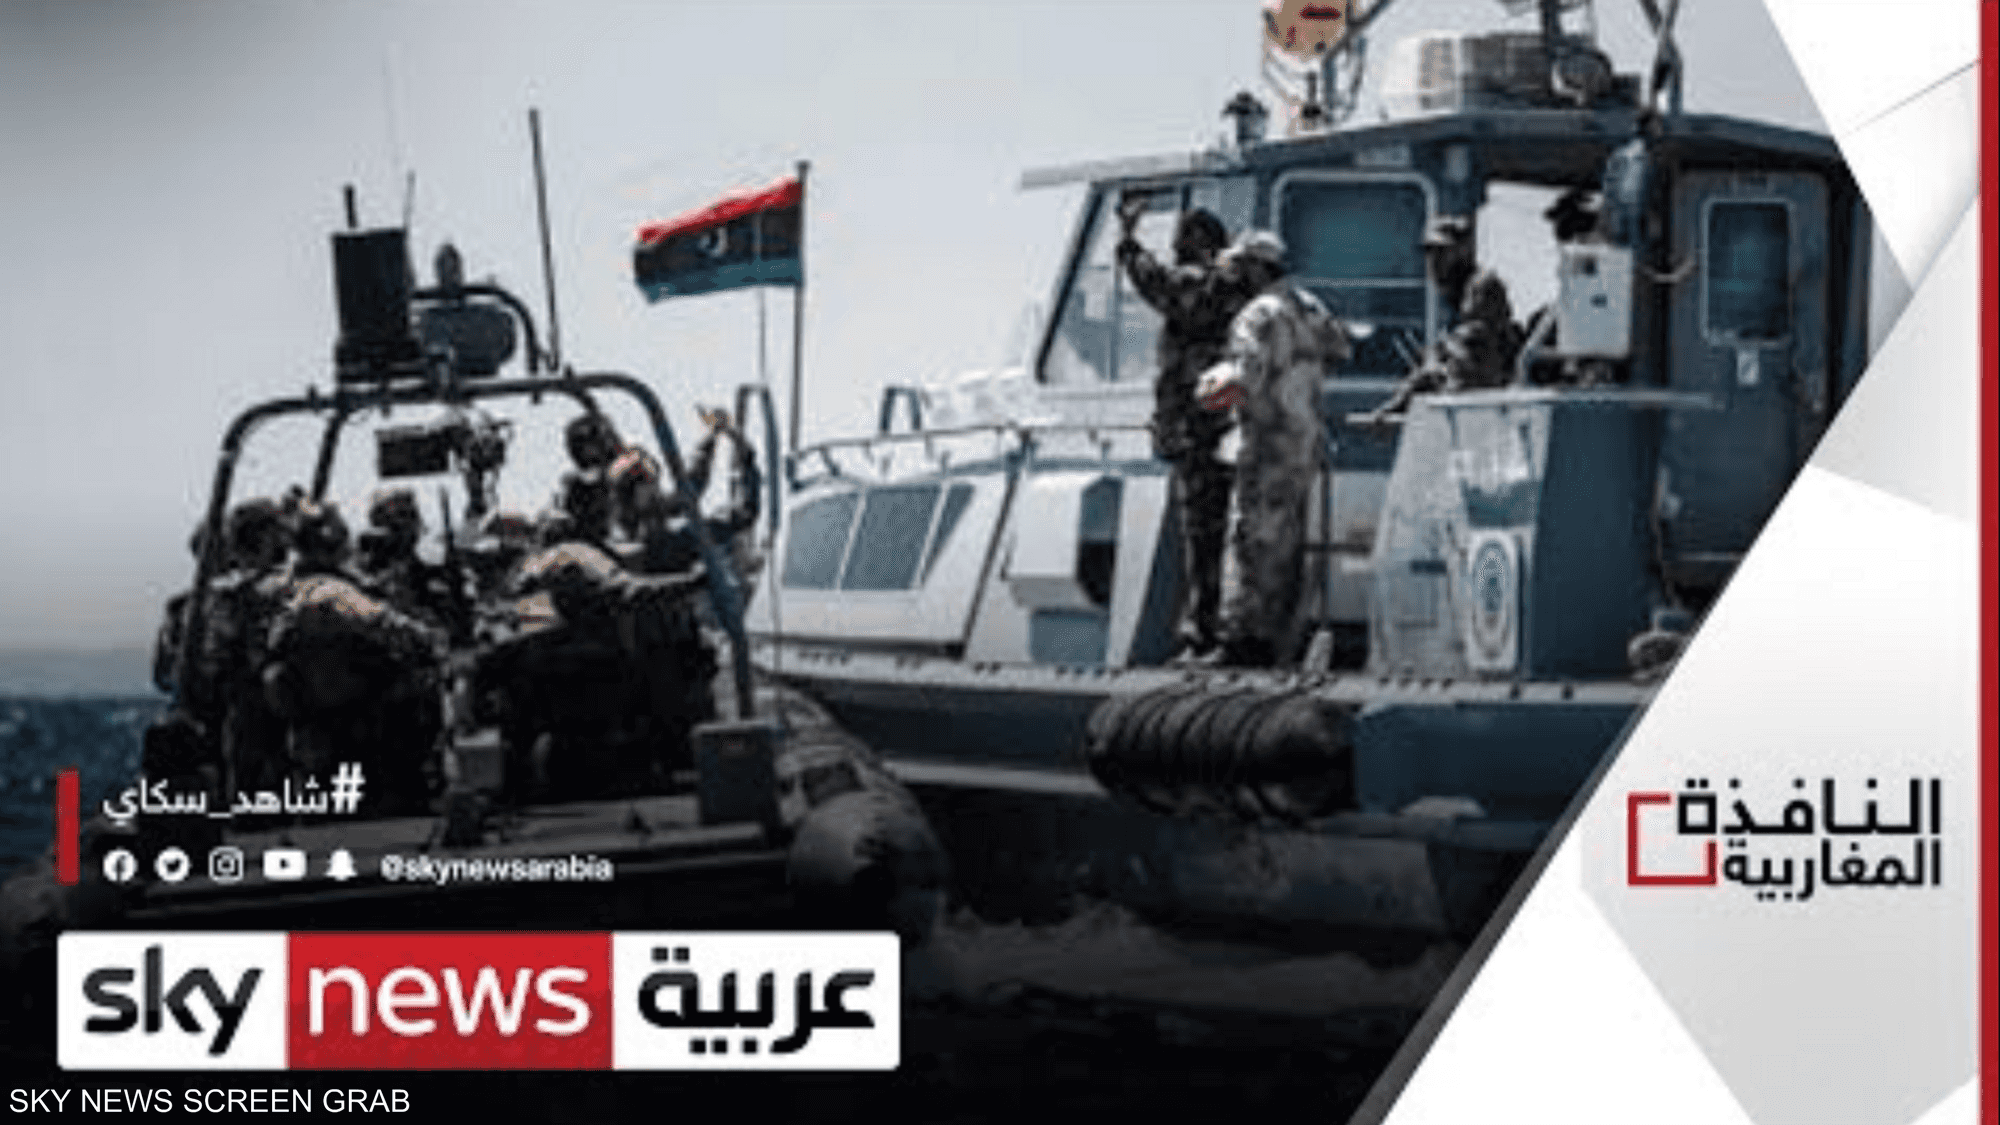 القوات البحرية الليبية تندد باختراقات إيطالية لمياهها